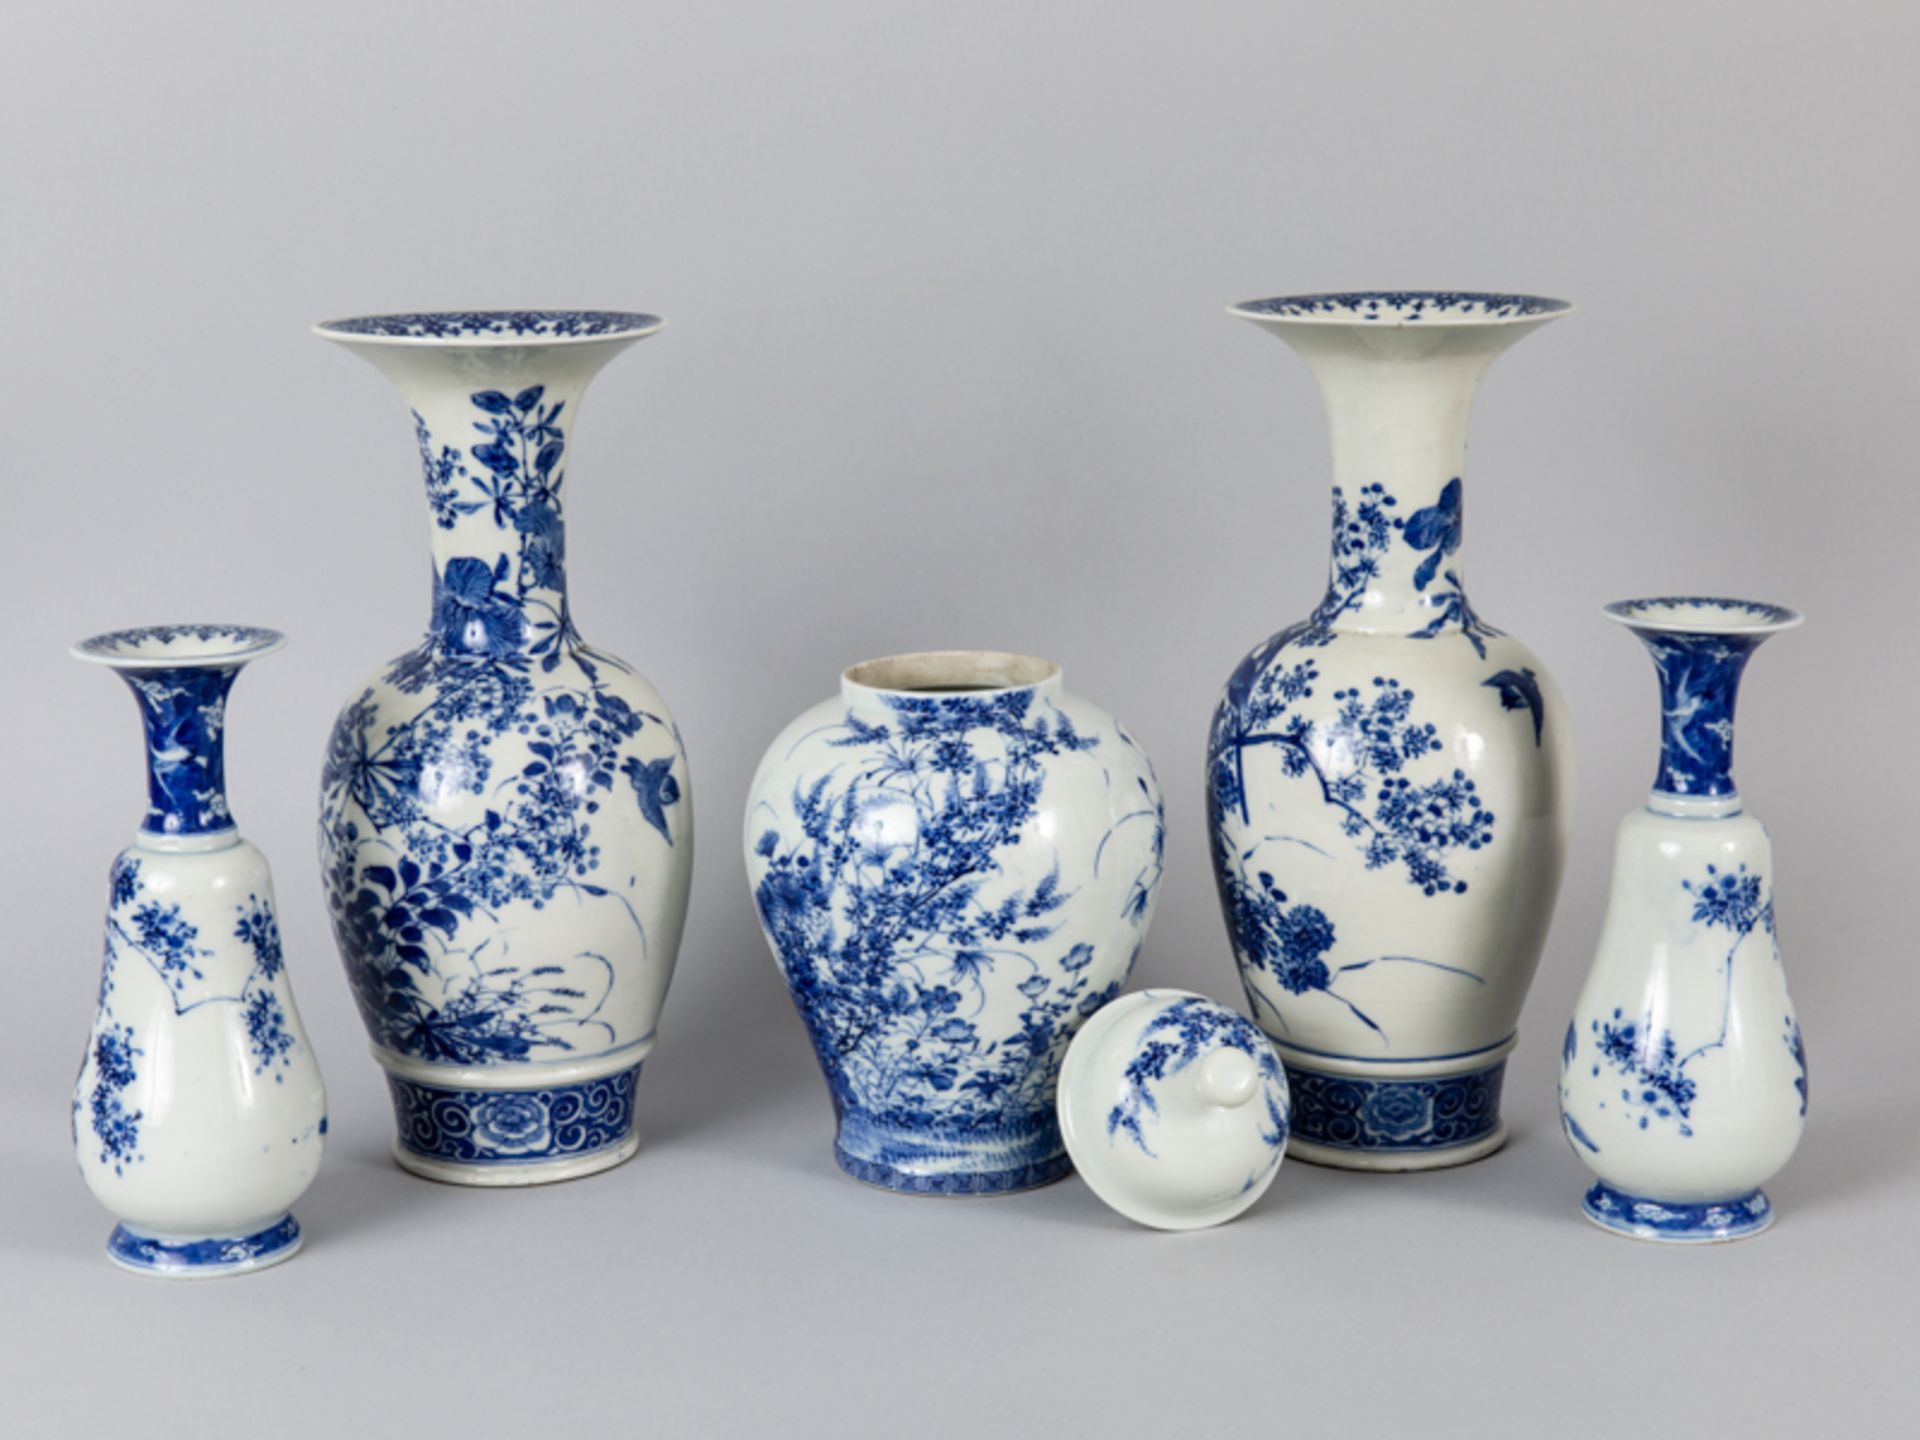 2 Arita-Vasen-Paare + Deckelvase mit Blaumalerei, Japan, Meiji-Zeit (1868 - 1912). - Image 2 of 3